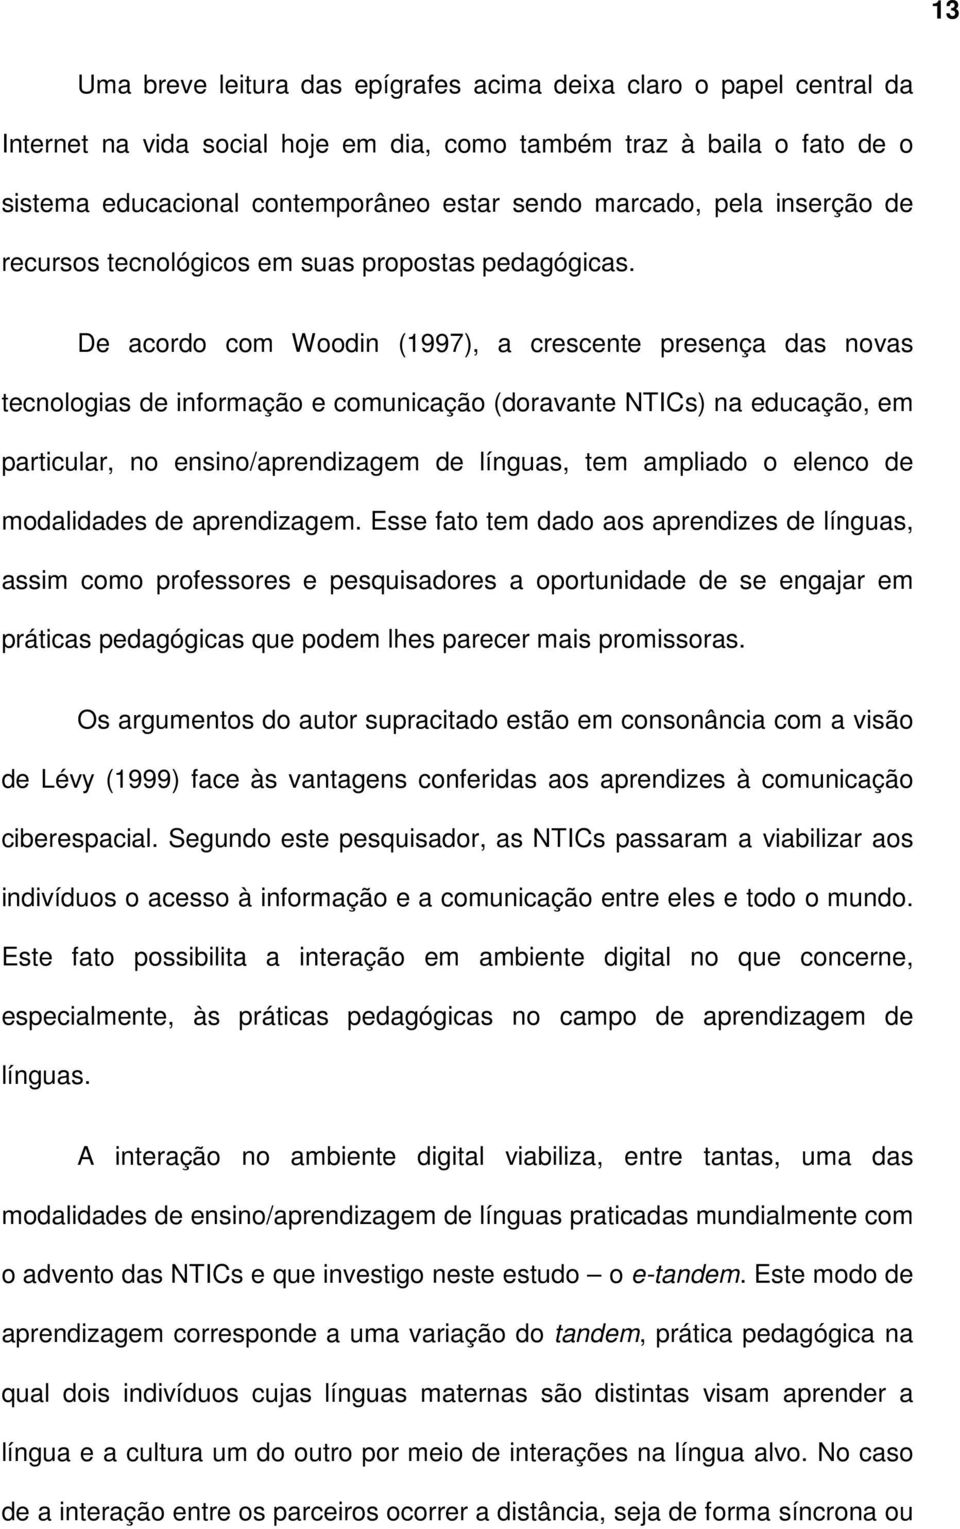 De acordo com Woodin (1997), a crescente presença das novas tecnologias de informação e comunicação (doravante NTICs) na educação, em particular, no ensino/aprendizagem de línguas, tem ampliado o